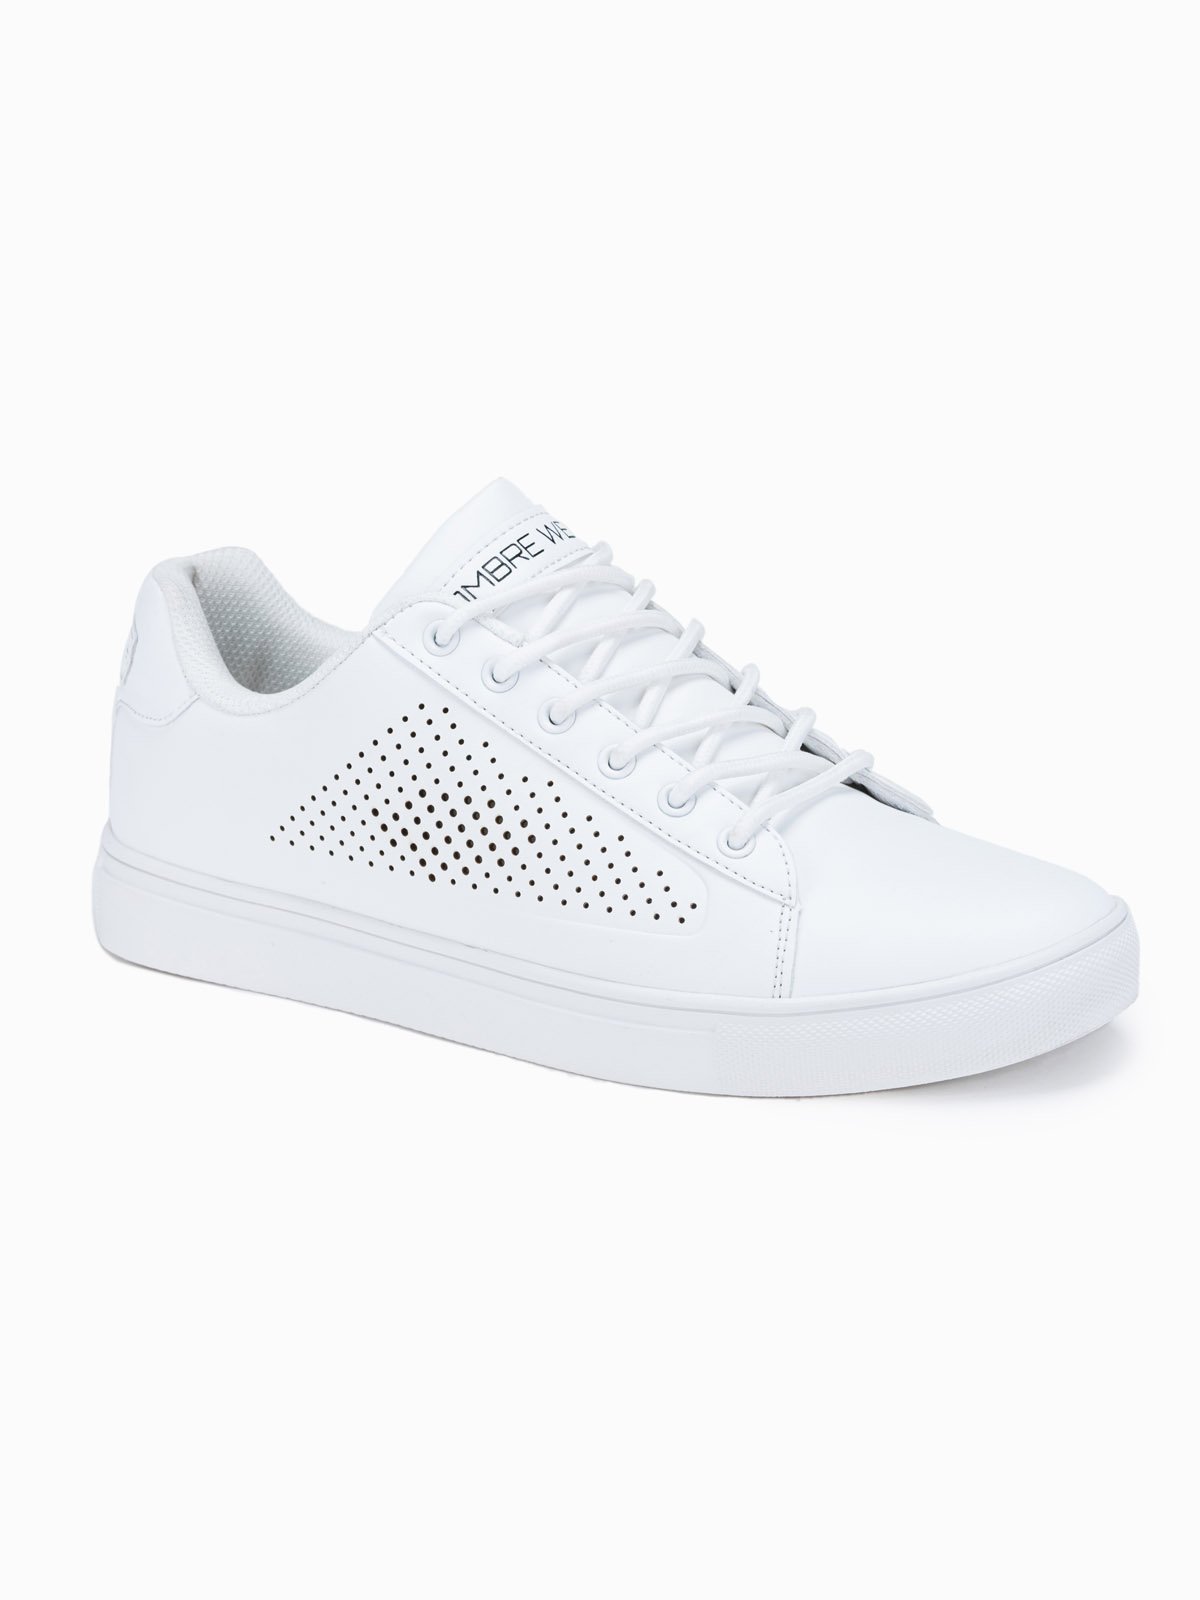 Men's ankle shoes T383 - white | Ombre.com - Men's clothing online